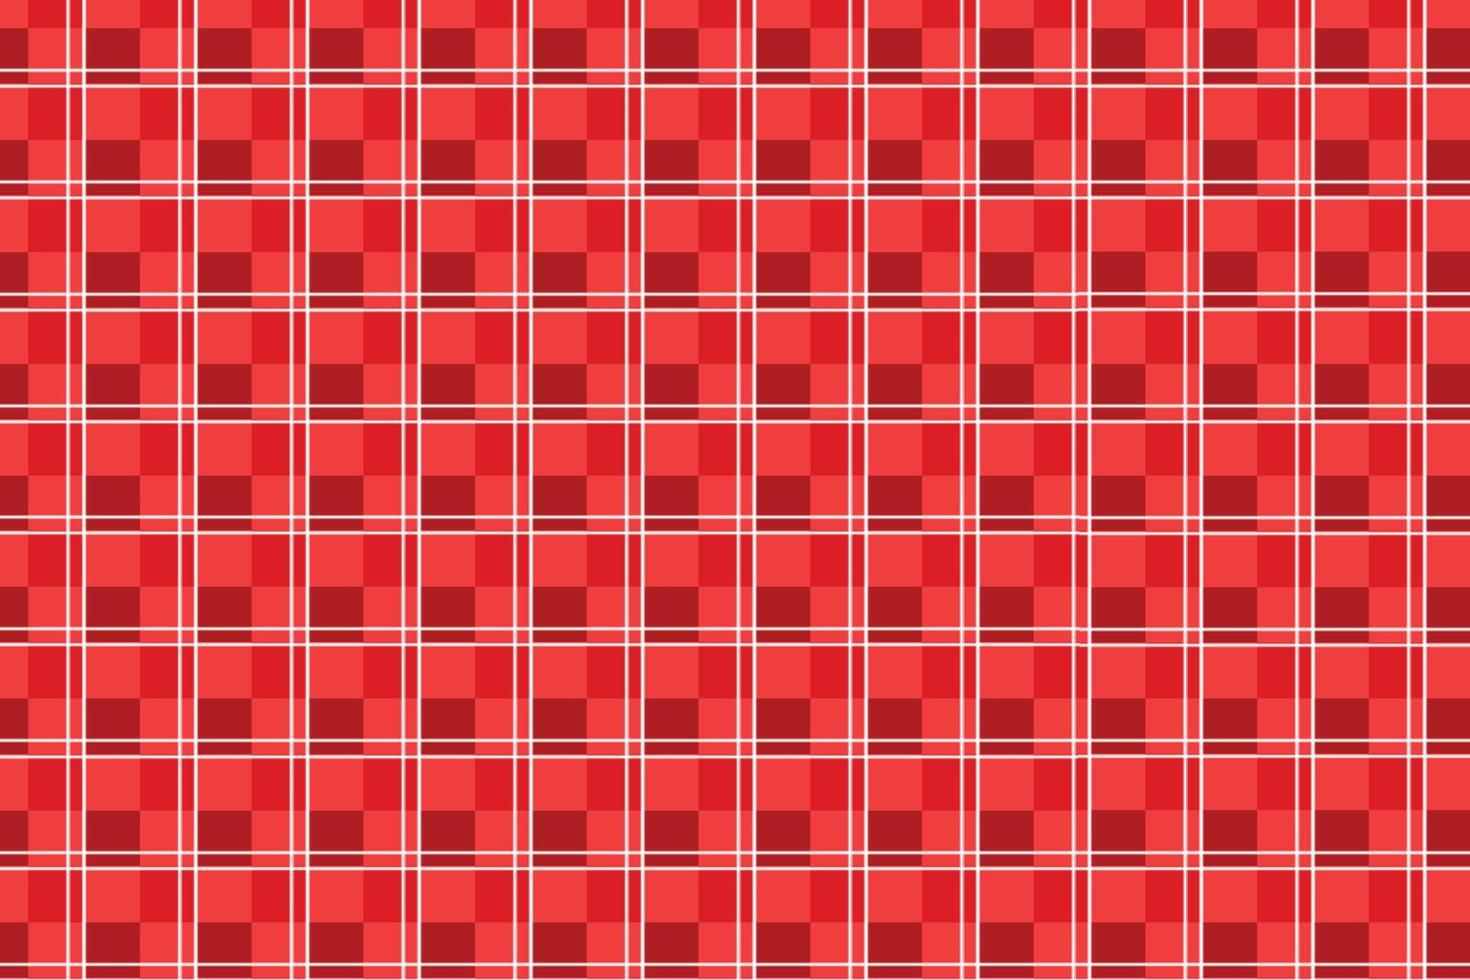 design de padrão sem costura xadrez xadrez com listra de cor vermelha. decoração de padrão de tecido sem fim para roupas. vetor de padrão xadrez xadrez forrado para lenços, cobertores ou edredons.